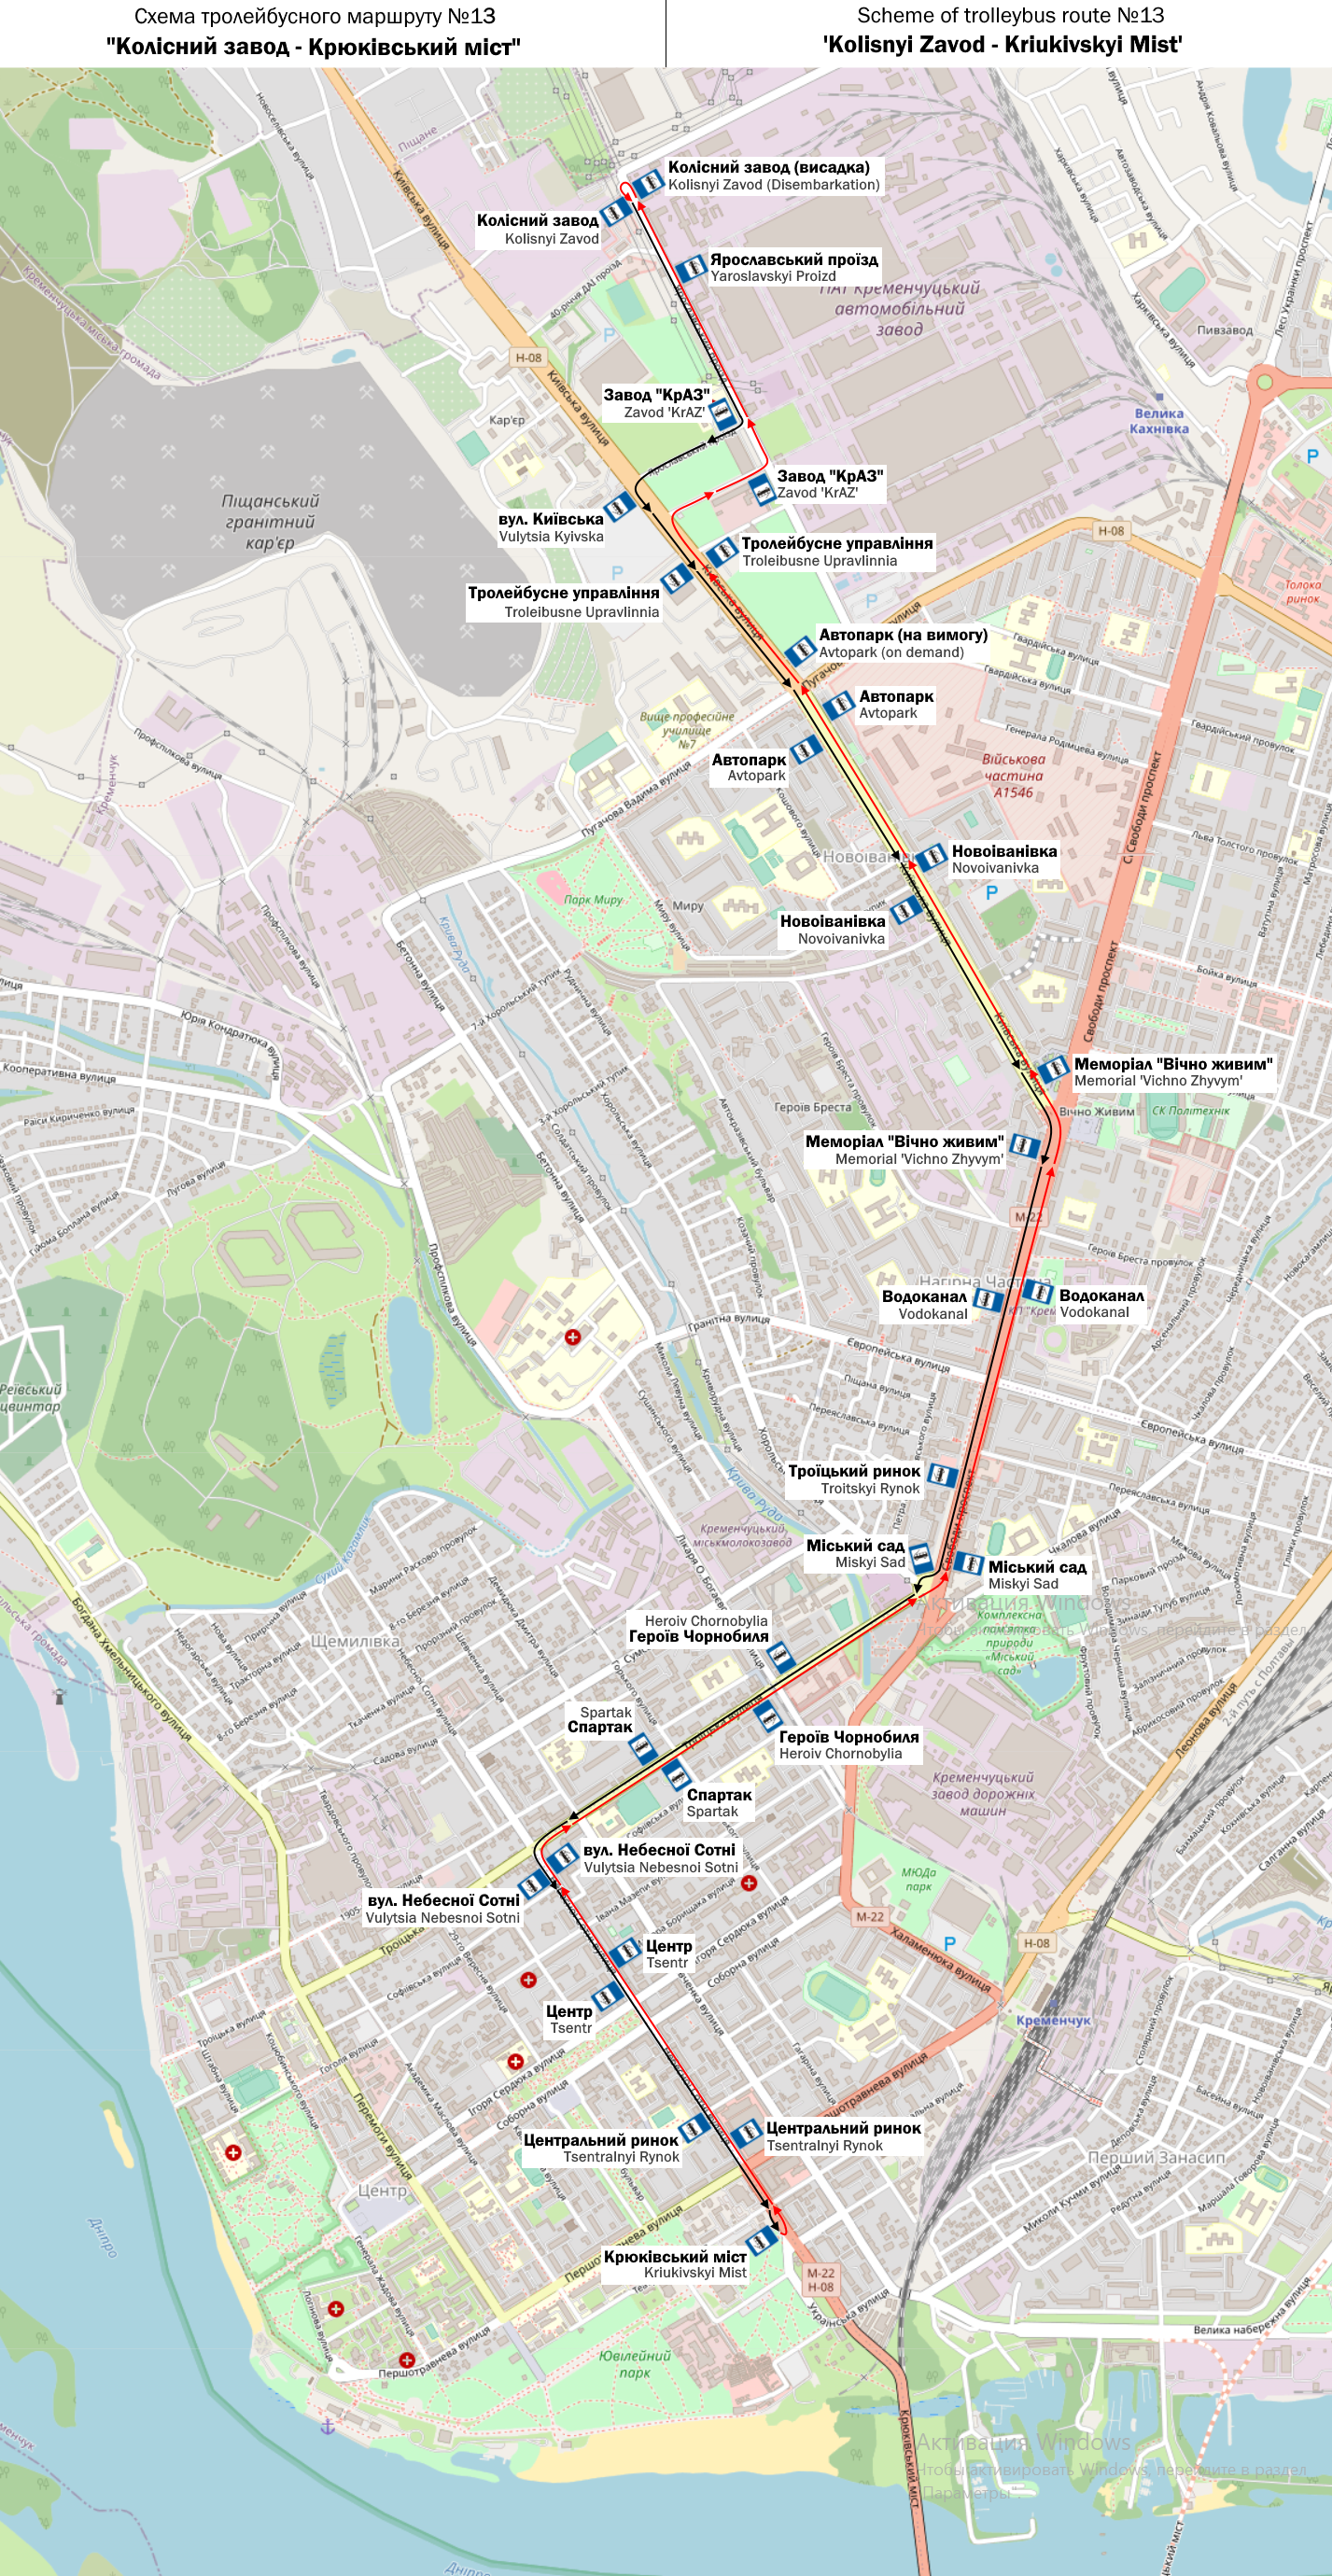 Кременчуг — Схемы отдельных маршрутов